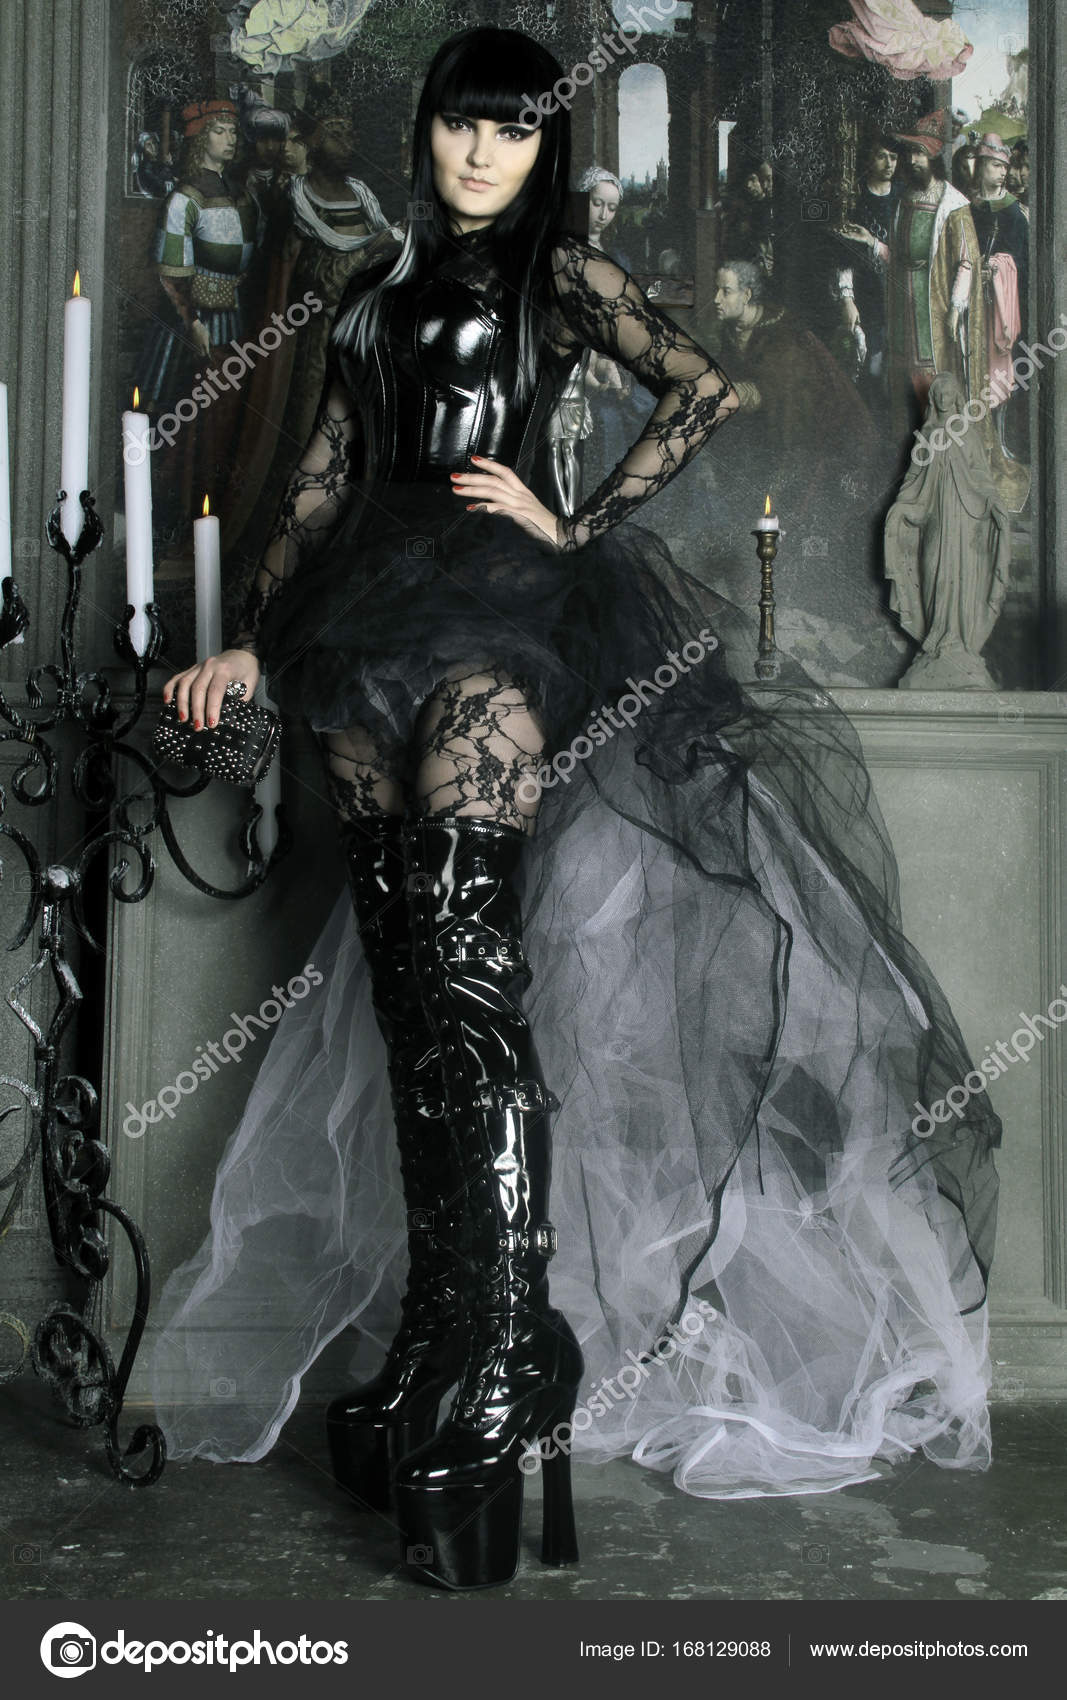 https://st3.depositphotos.com/1091519/16812/i/1600/depositphotos_168129088-stock-photo-beautiful-gothic-lady-wearing-lace.jpg